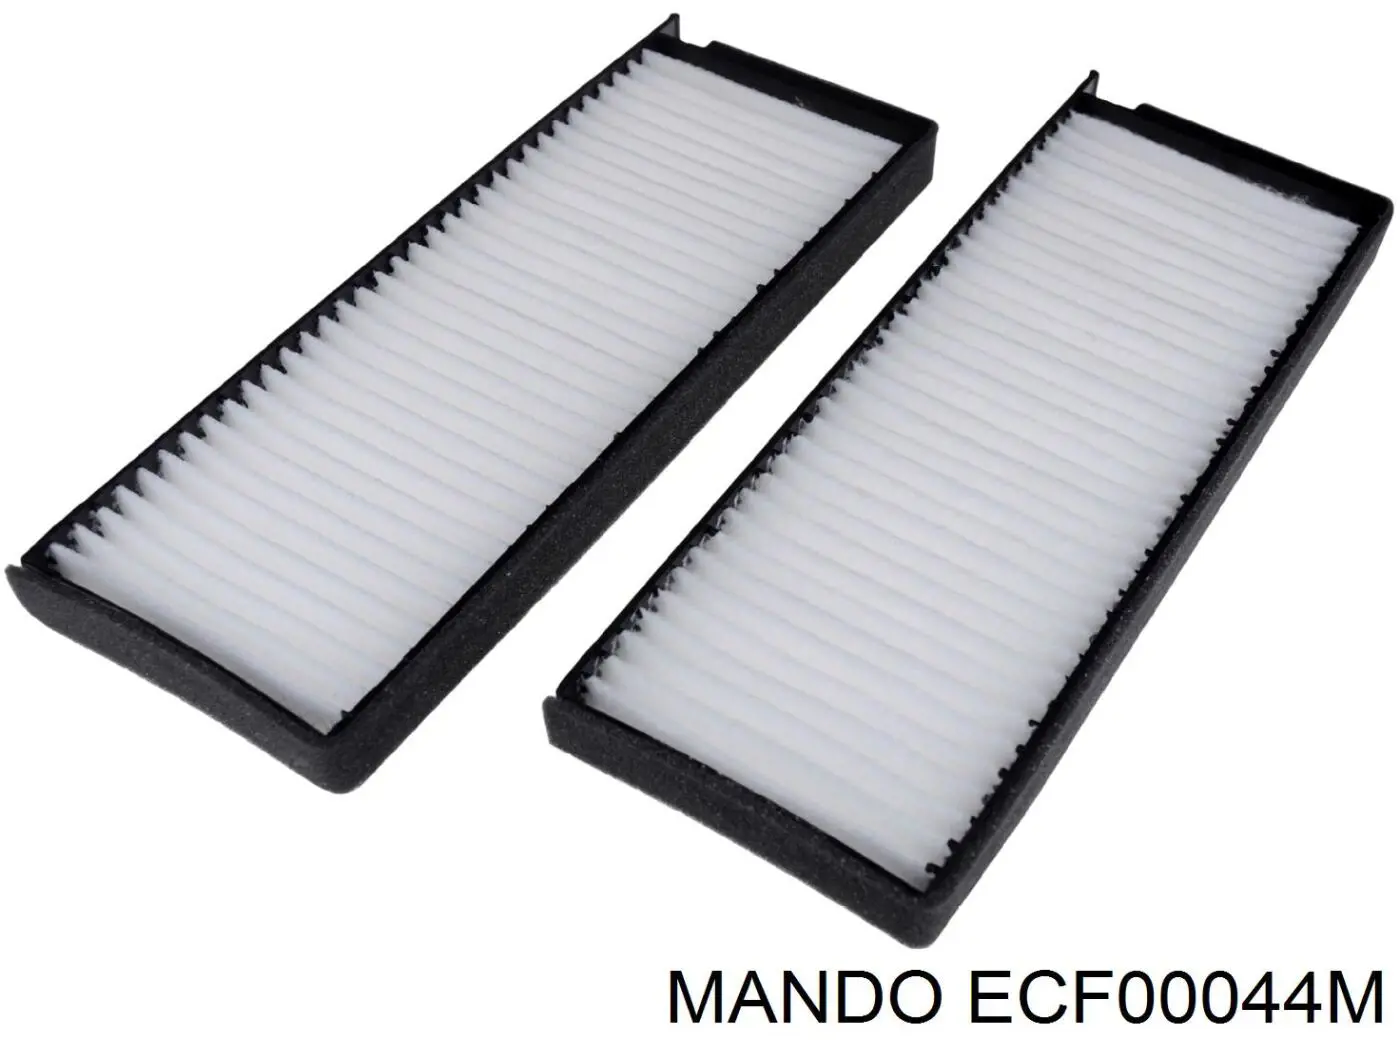 ECF00044M Mando фильтр салона